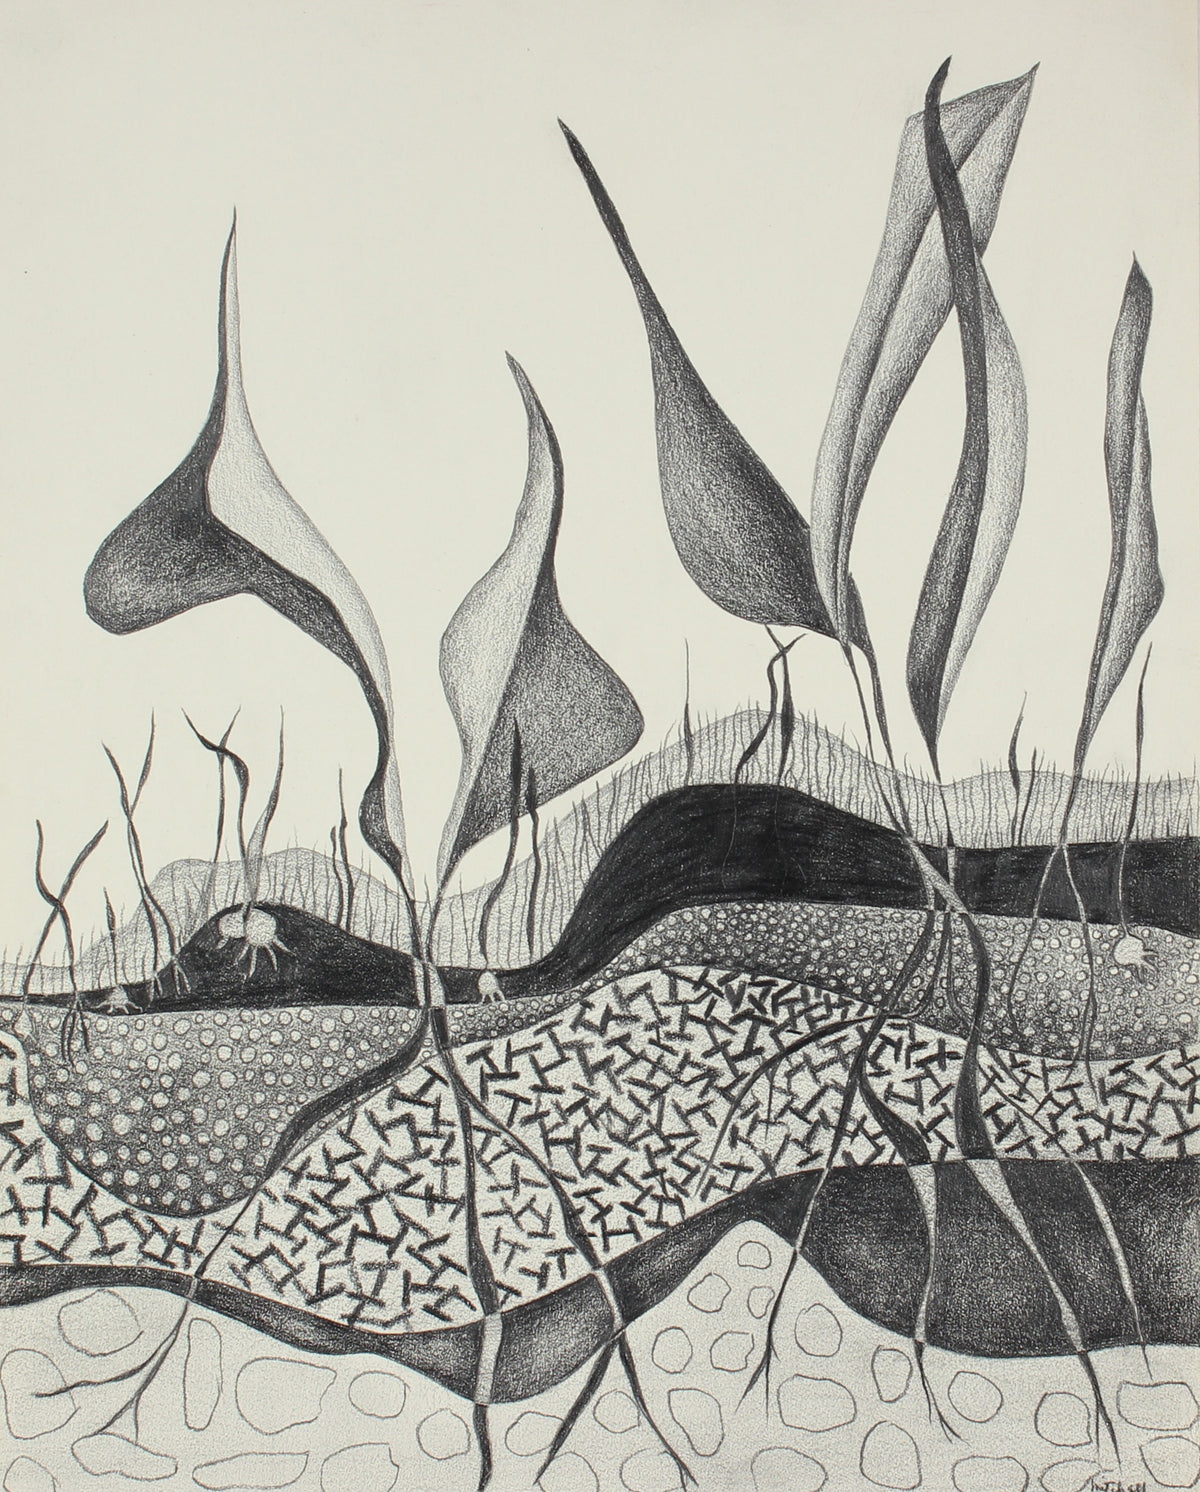 Leaves &amp; Roots&lt;br&gt; 1975 Graphite Drawing&lt;br&gt;&lt;br&gt;#86296